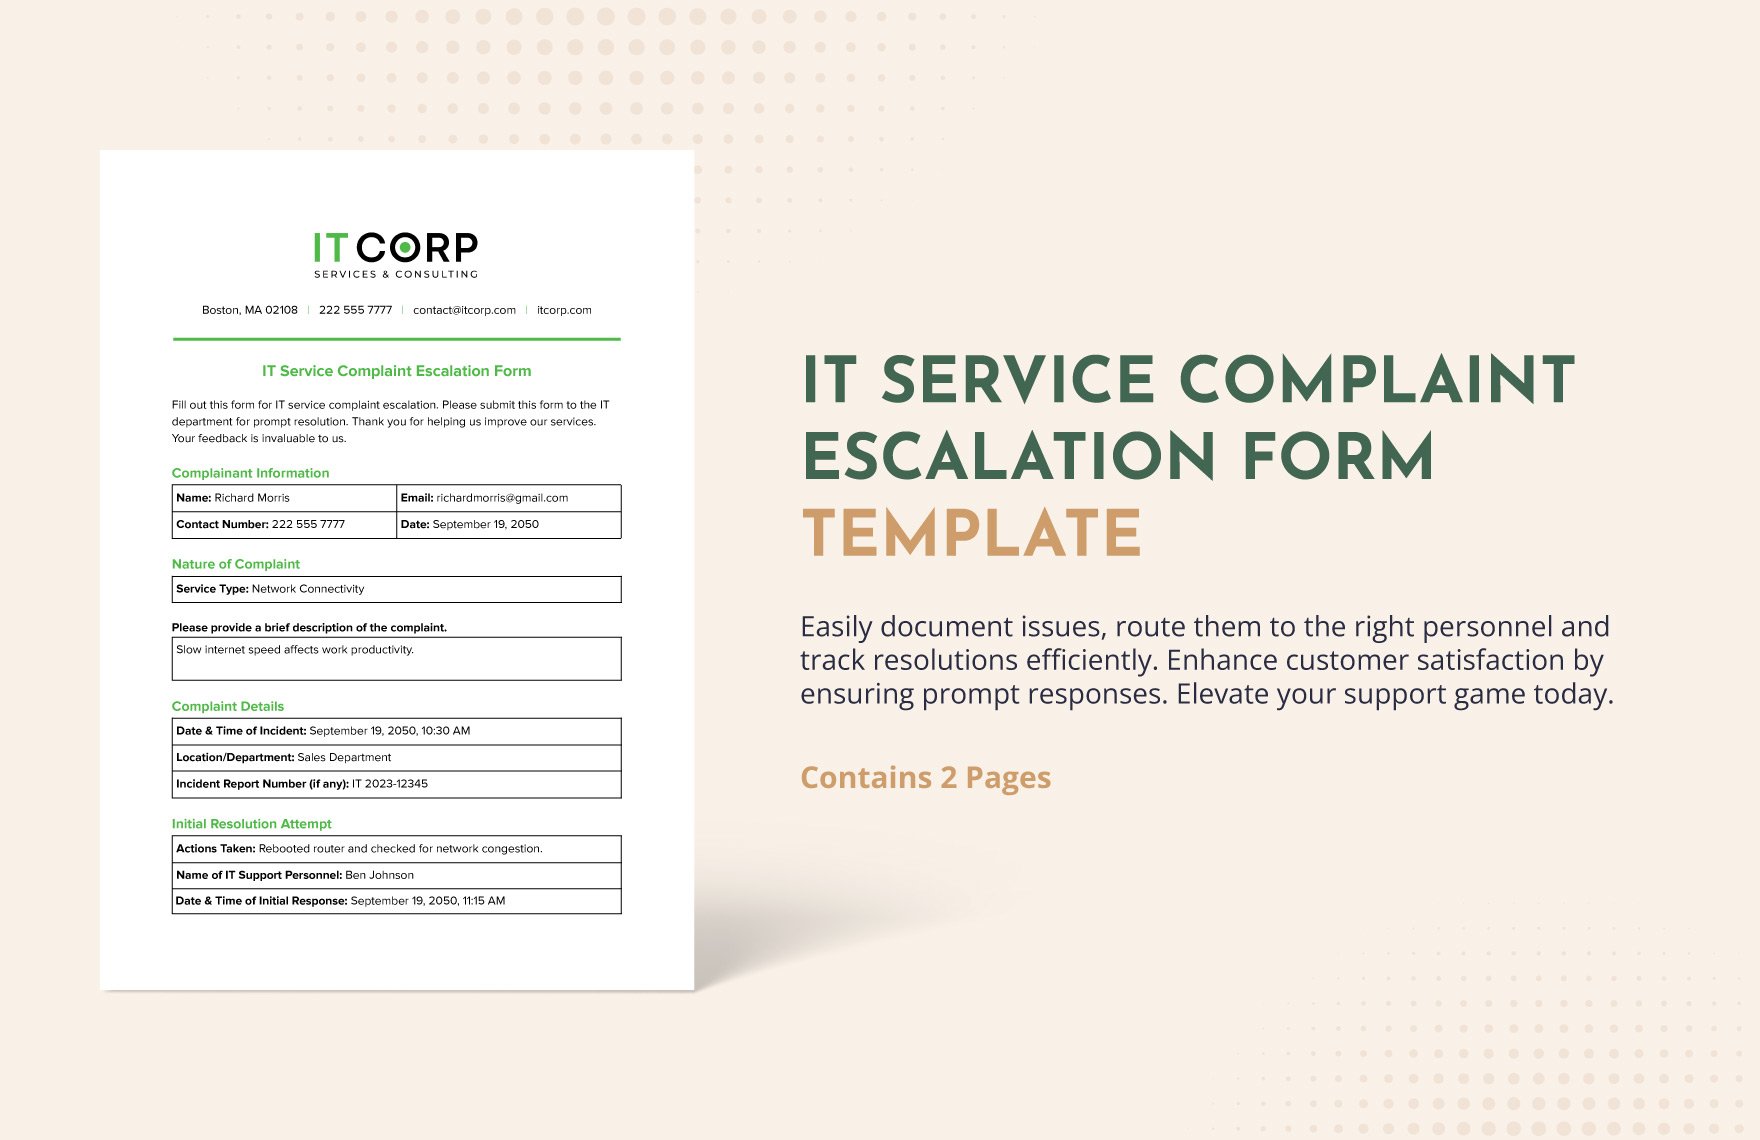 IT Service Complaint Escalation Form Template